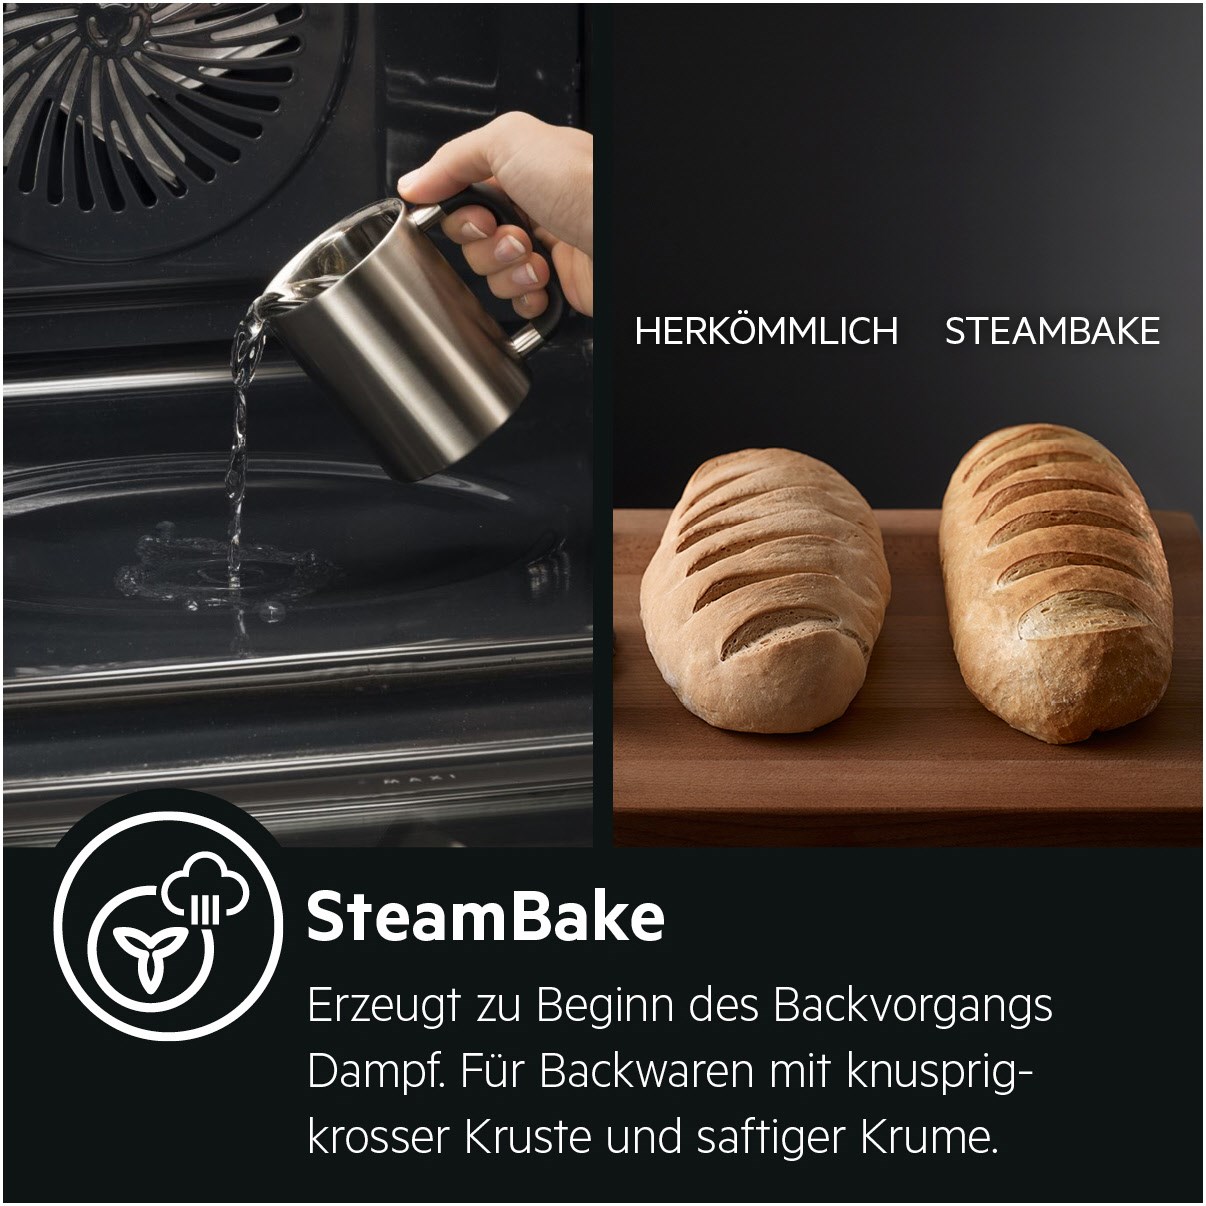 AEG Einbauherd, SteamBake – mit Feuchtigkeitszugabe, Touch-Bedienung